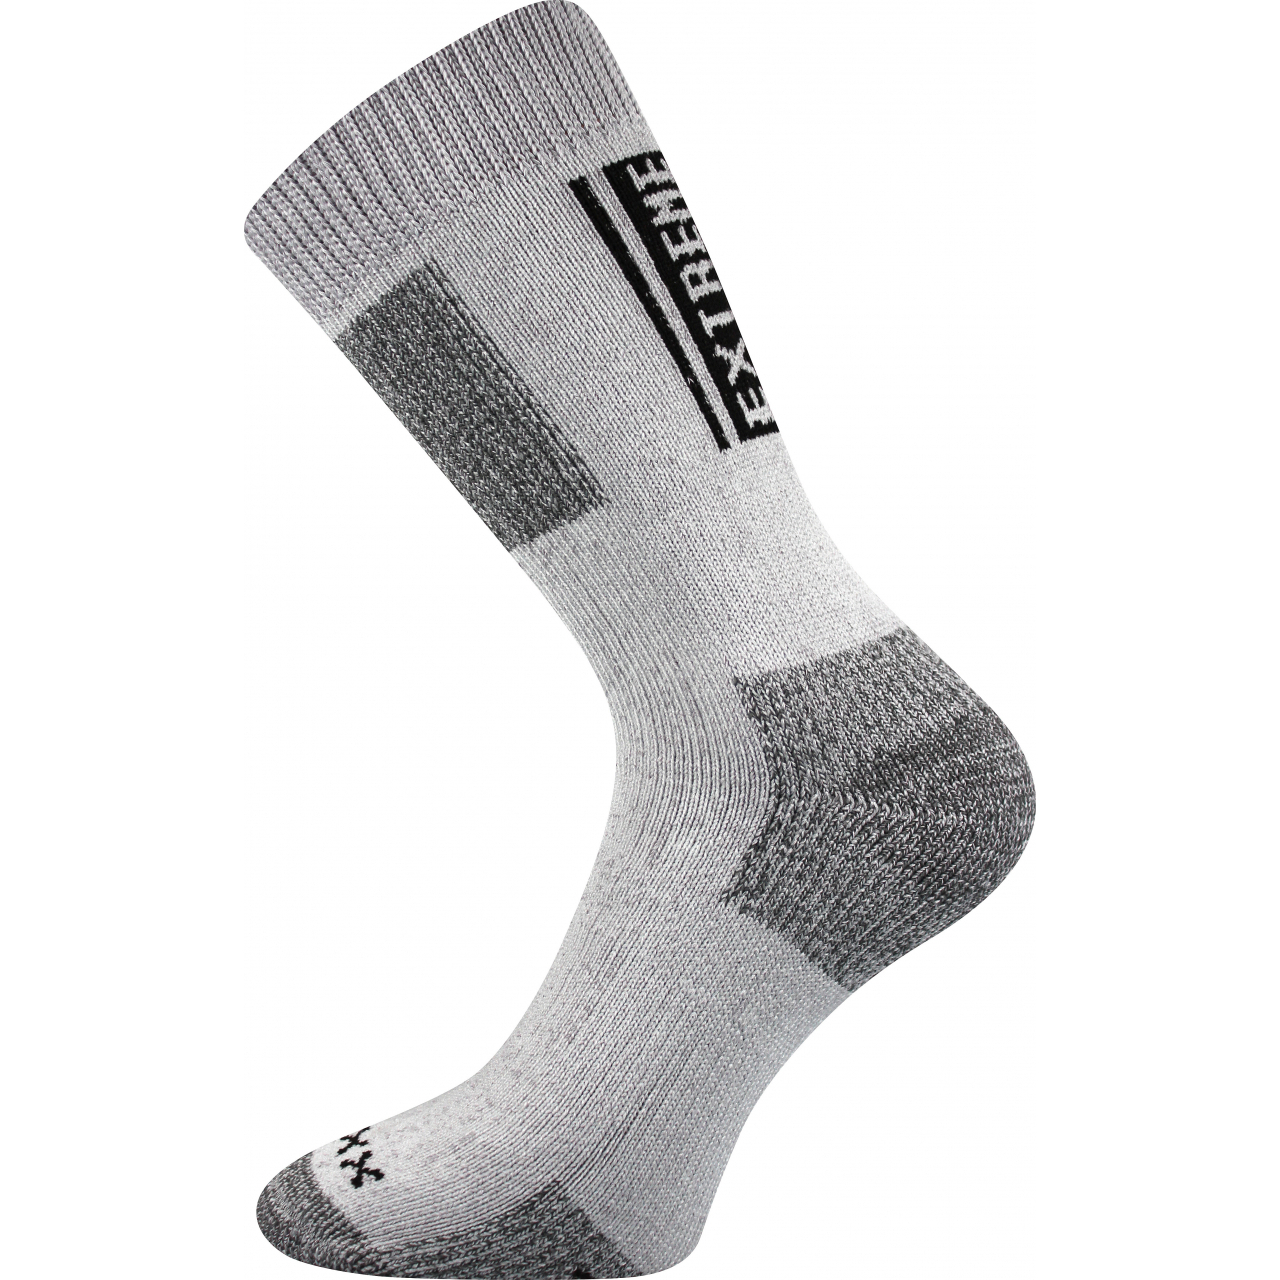 Ponožky unisex termo Voxx Extrém - světle šedé, 35-38